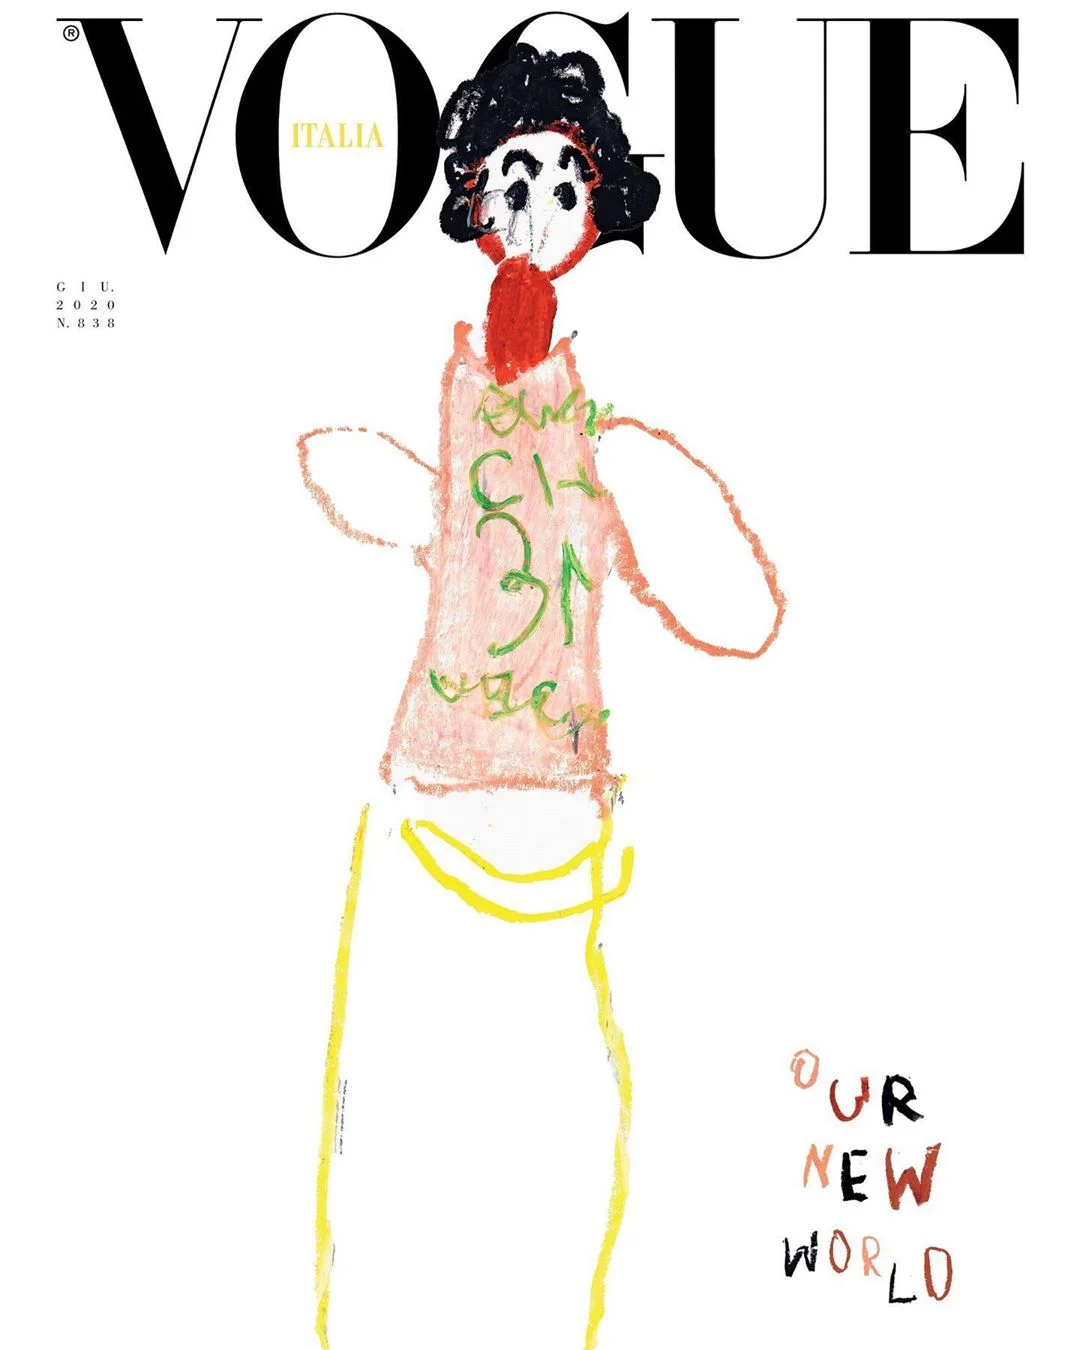 Уперше в історії обкладинку Vogue прикрасили дитячі малюнки - фото 480759